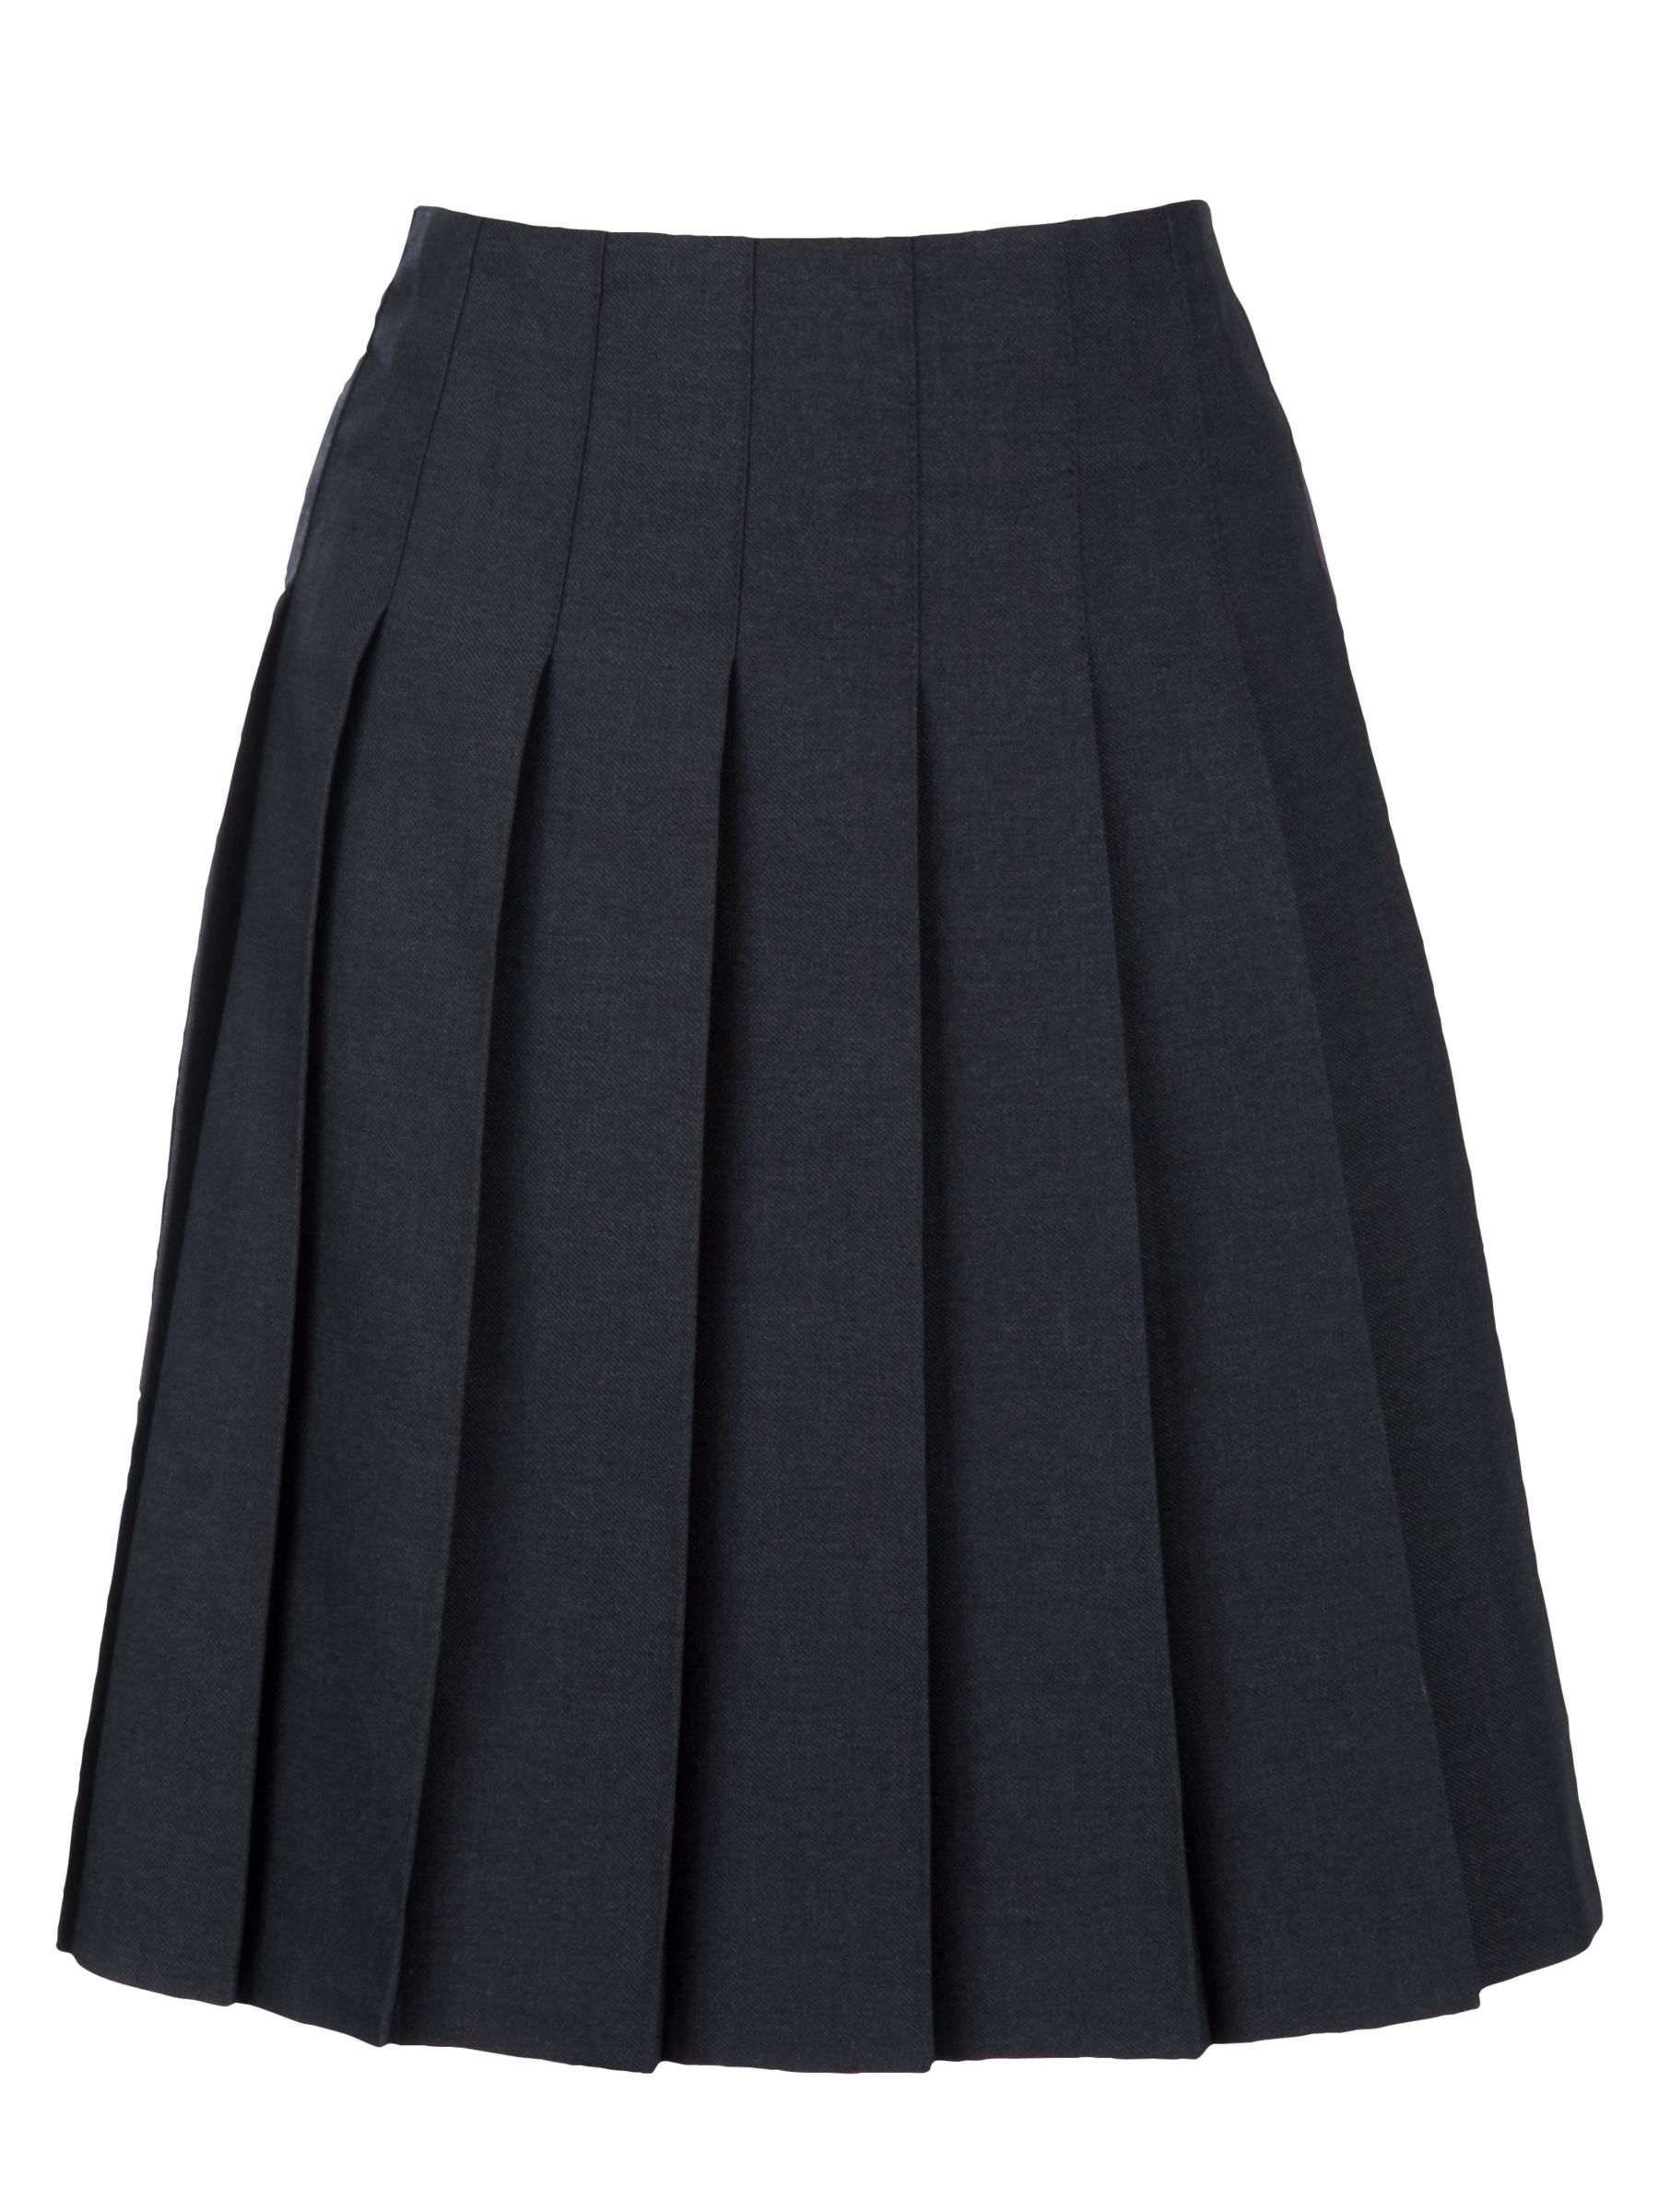 Buy The Westgate School Girls' Pleated Skirt, Grey | John Lewis